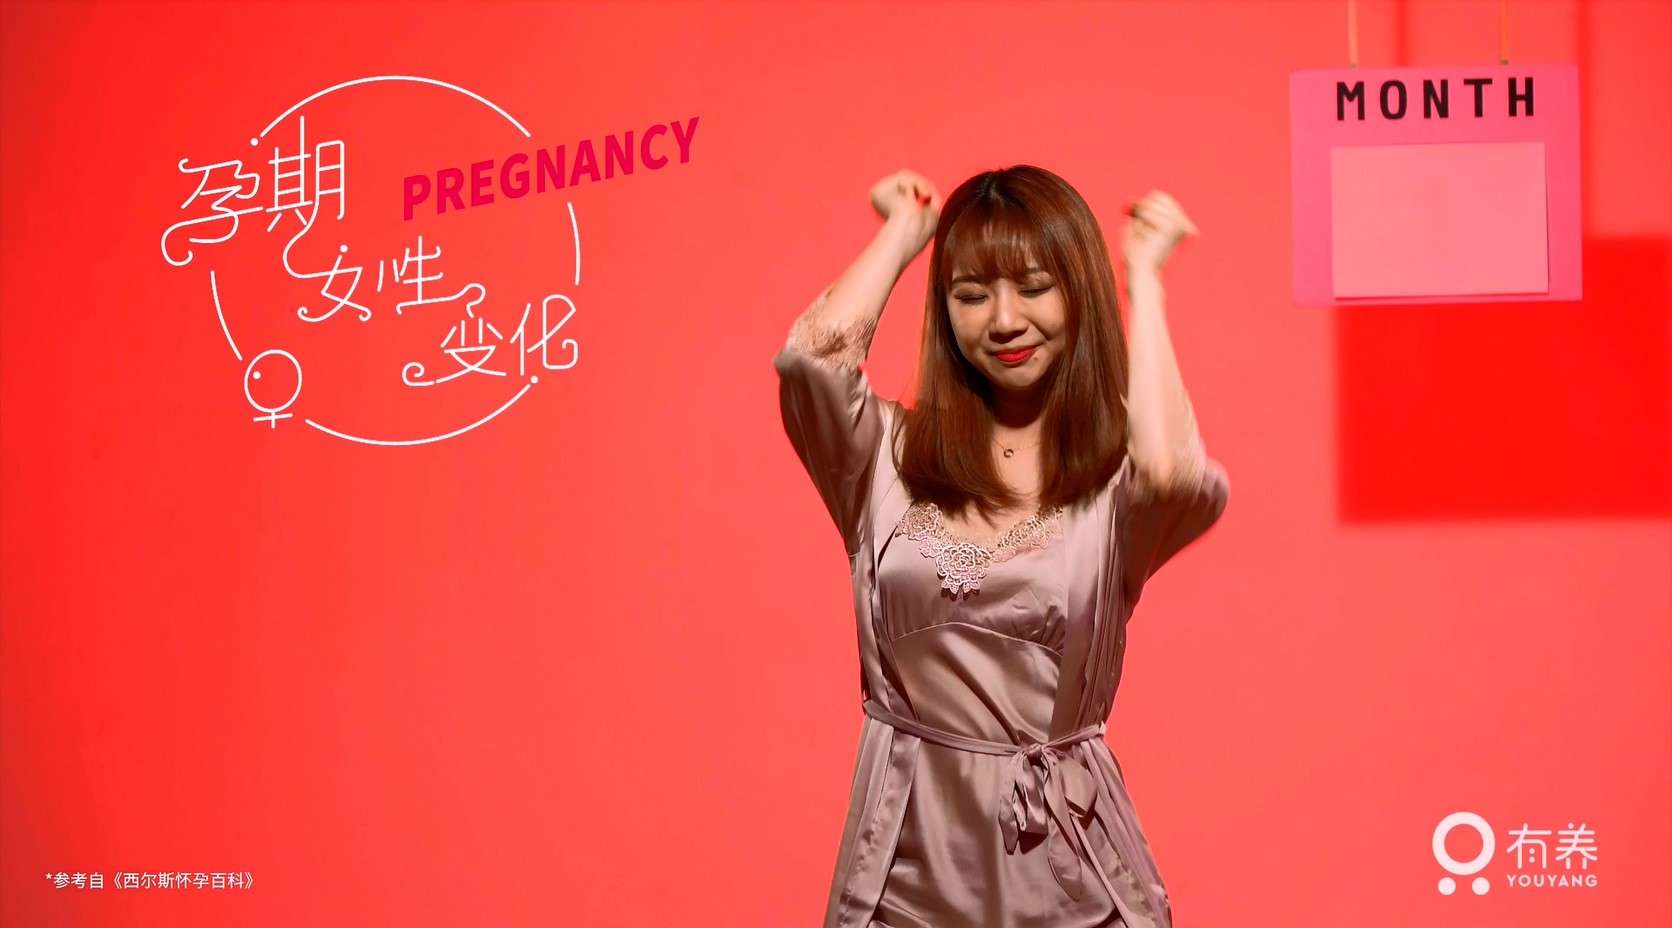 3分钟揭秘怀孕期间女性的身心变化